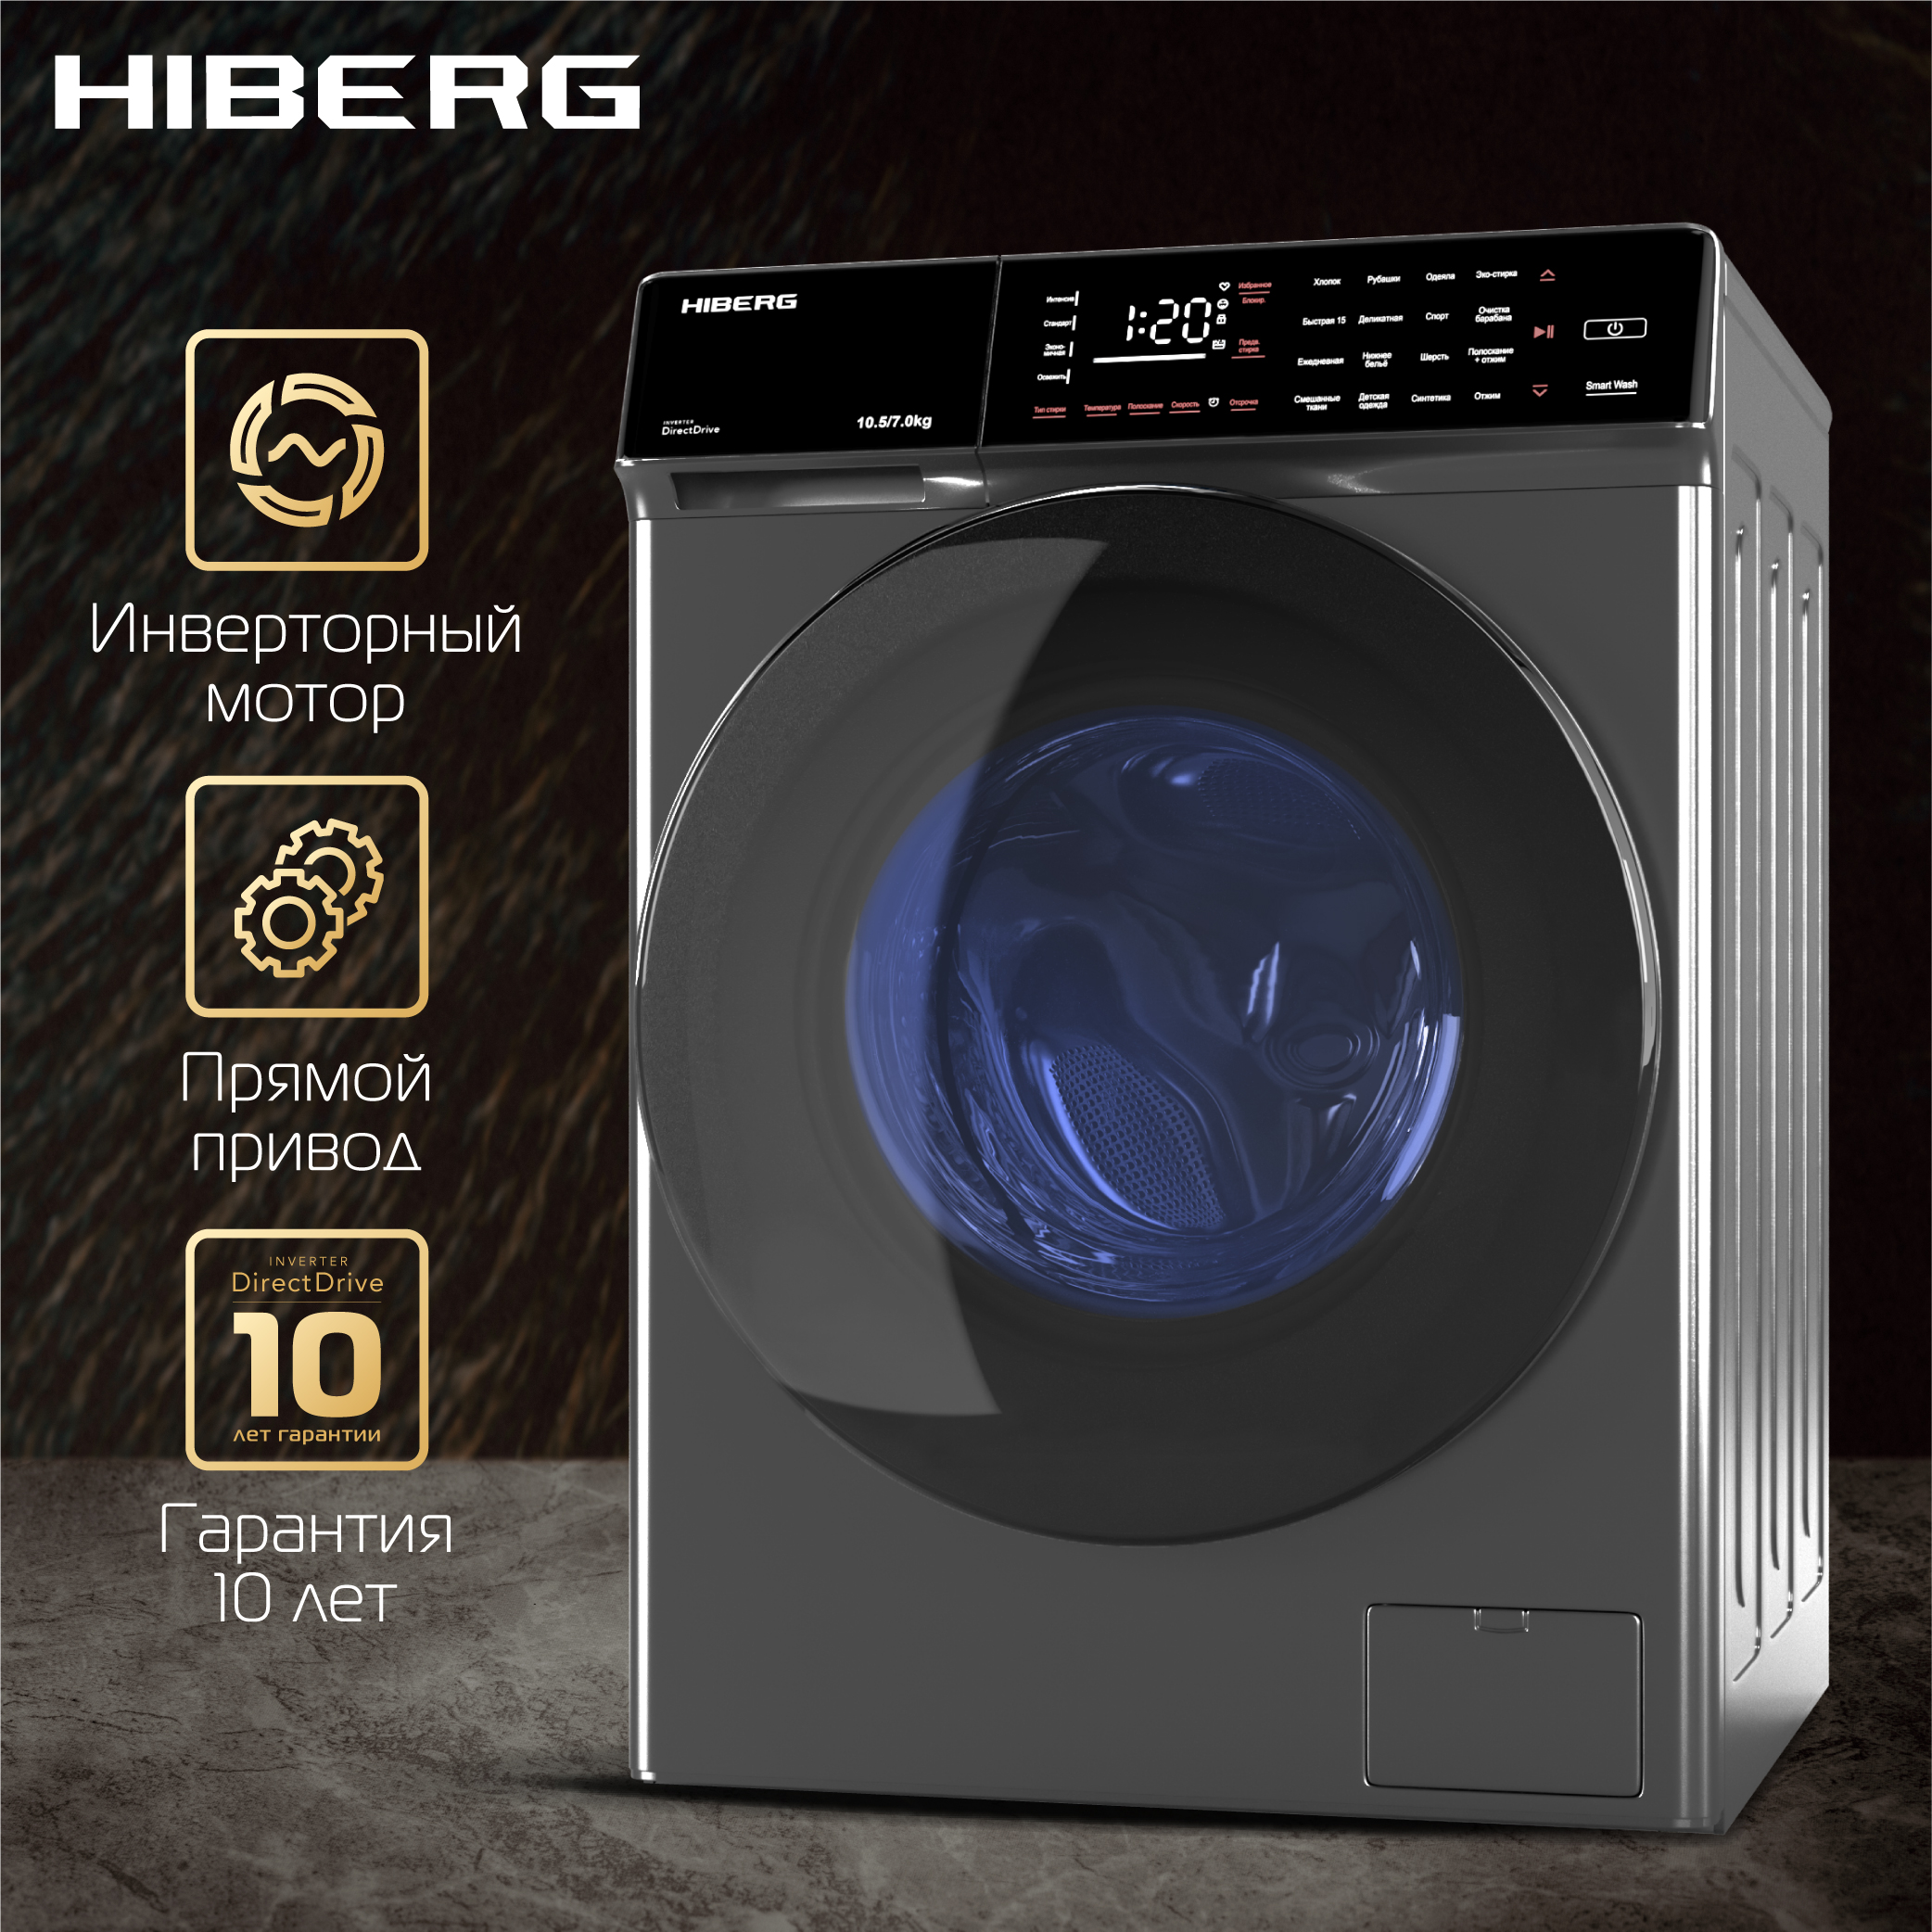 Стиральная машина Hiberg i-DDQ9 - 10714 Sd серебристый стиральная машина hiberg i ddq8 10614 ss серебристый